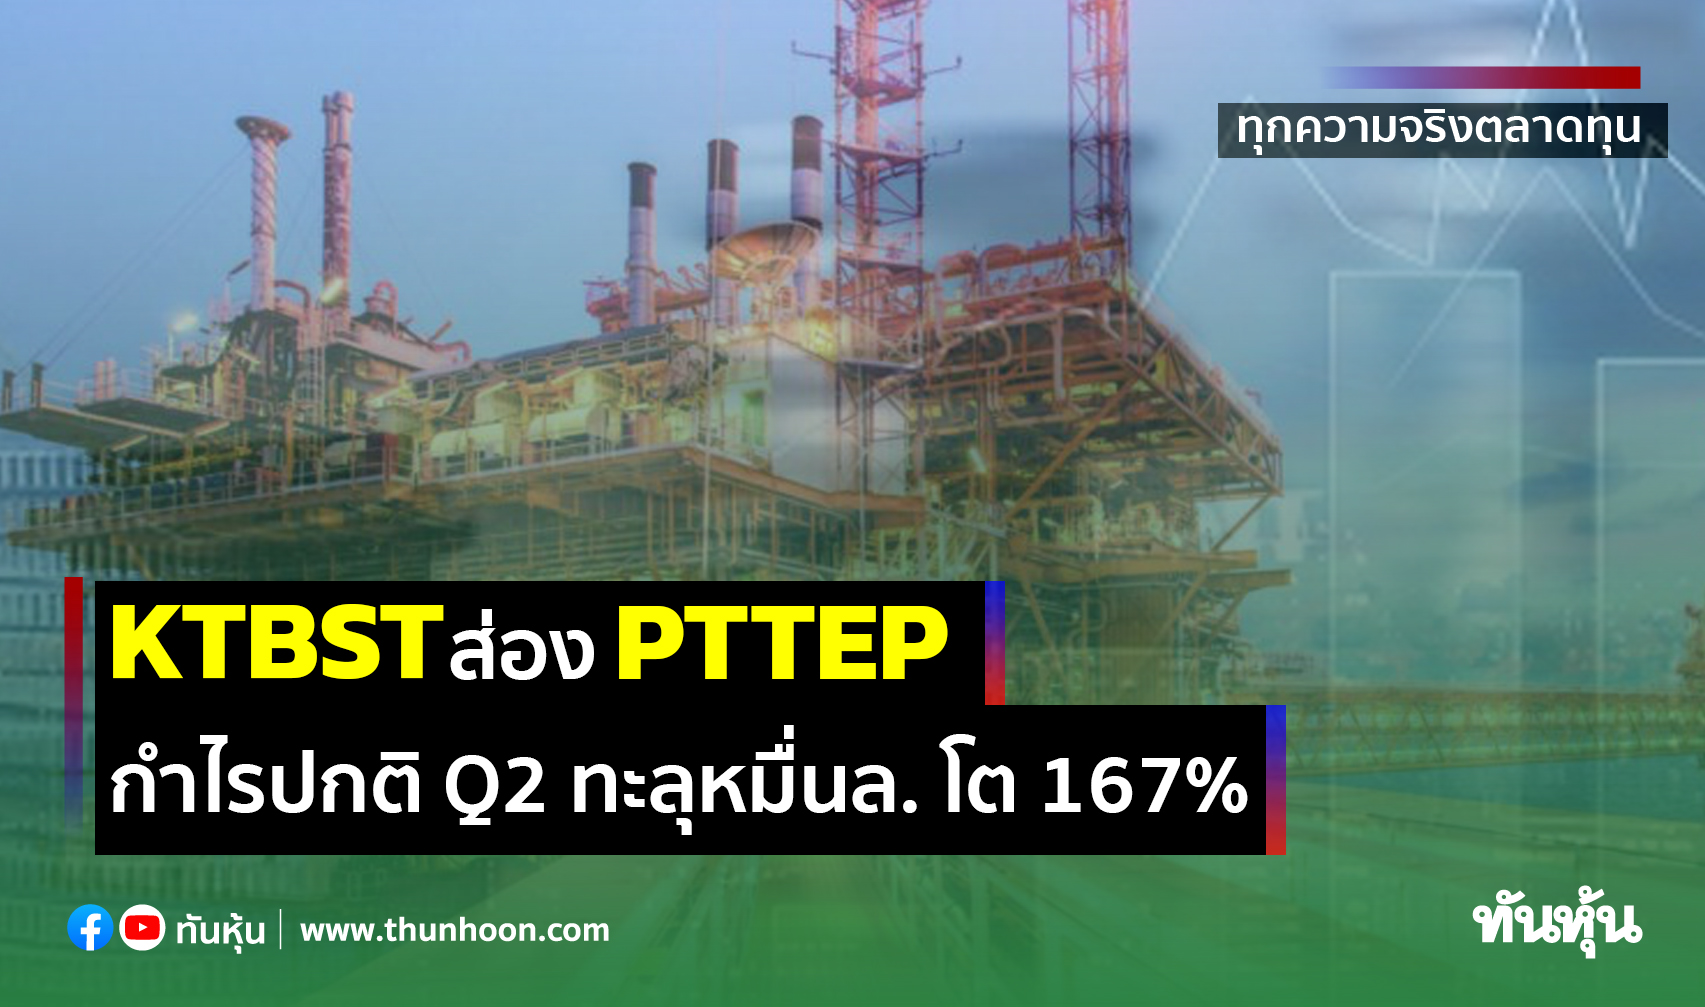 KTBST ส่อง PTTEP กำไรปกติ Q2 ทะลุหมื่นล. โต 167%